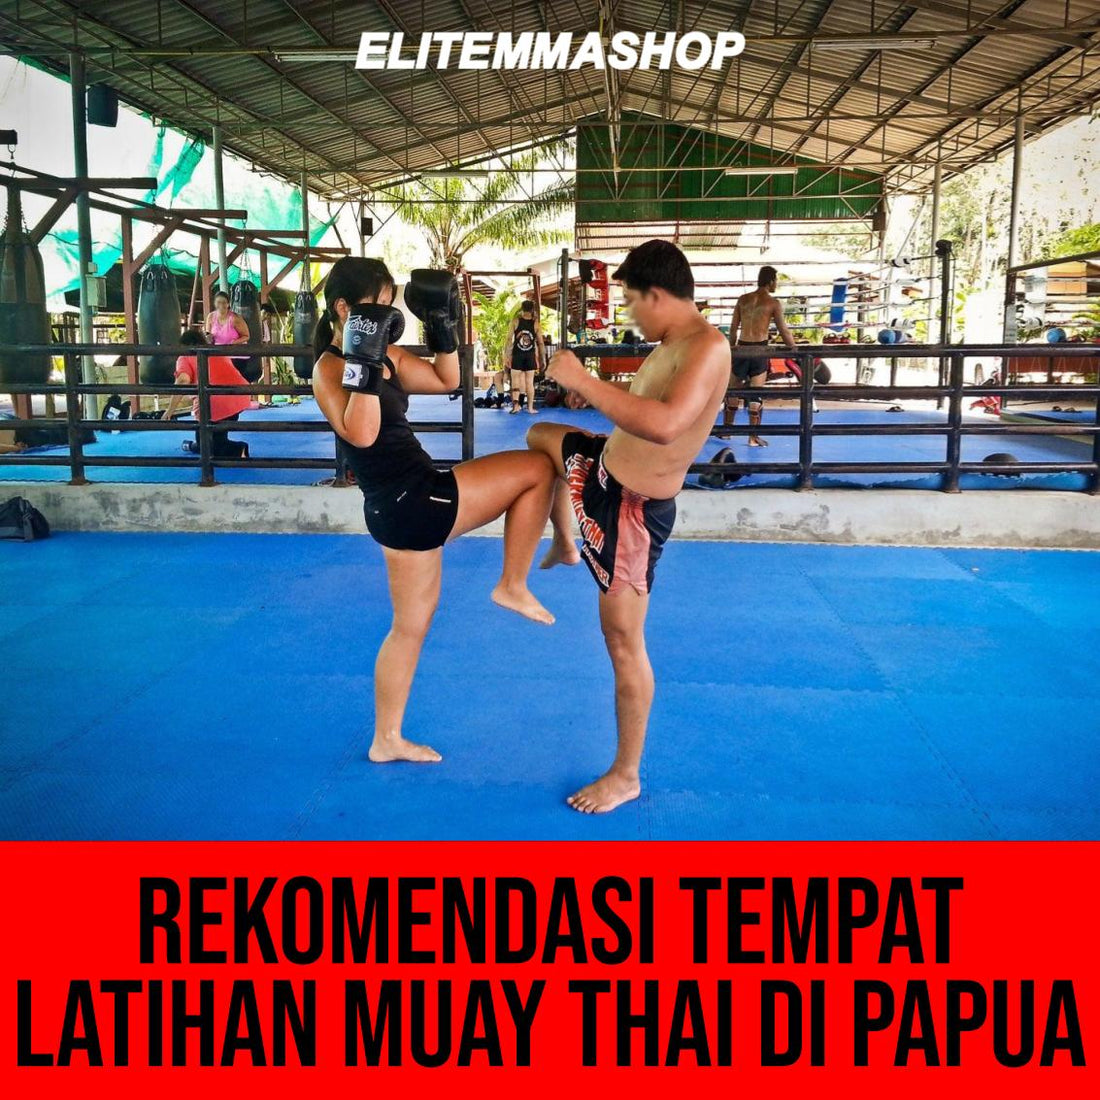 Rekomendasi Tempat Latihan Muay Thai di Papua